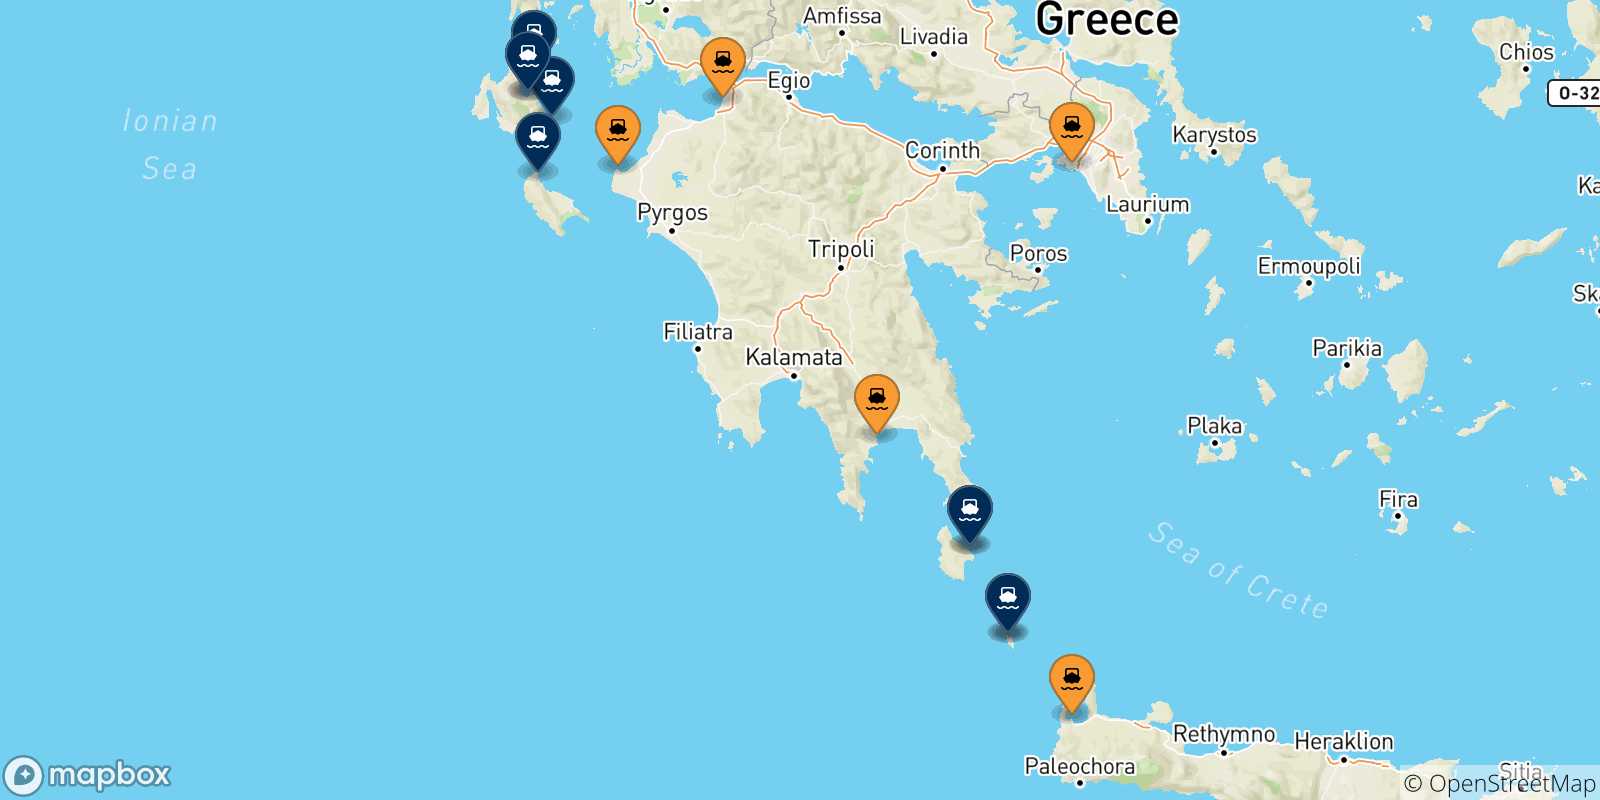 Mappa delle possibili rotte tra la Grecia e le Isole Ionie